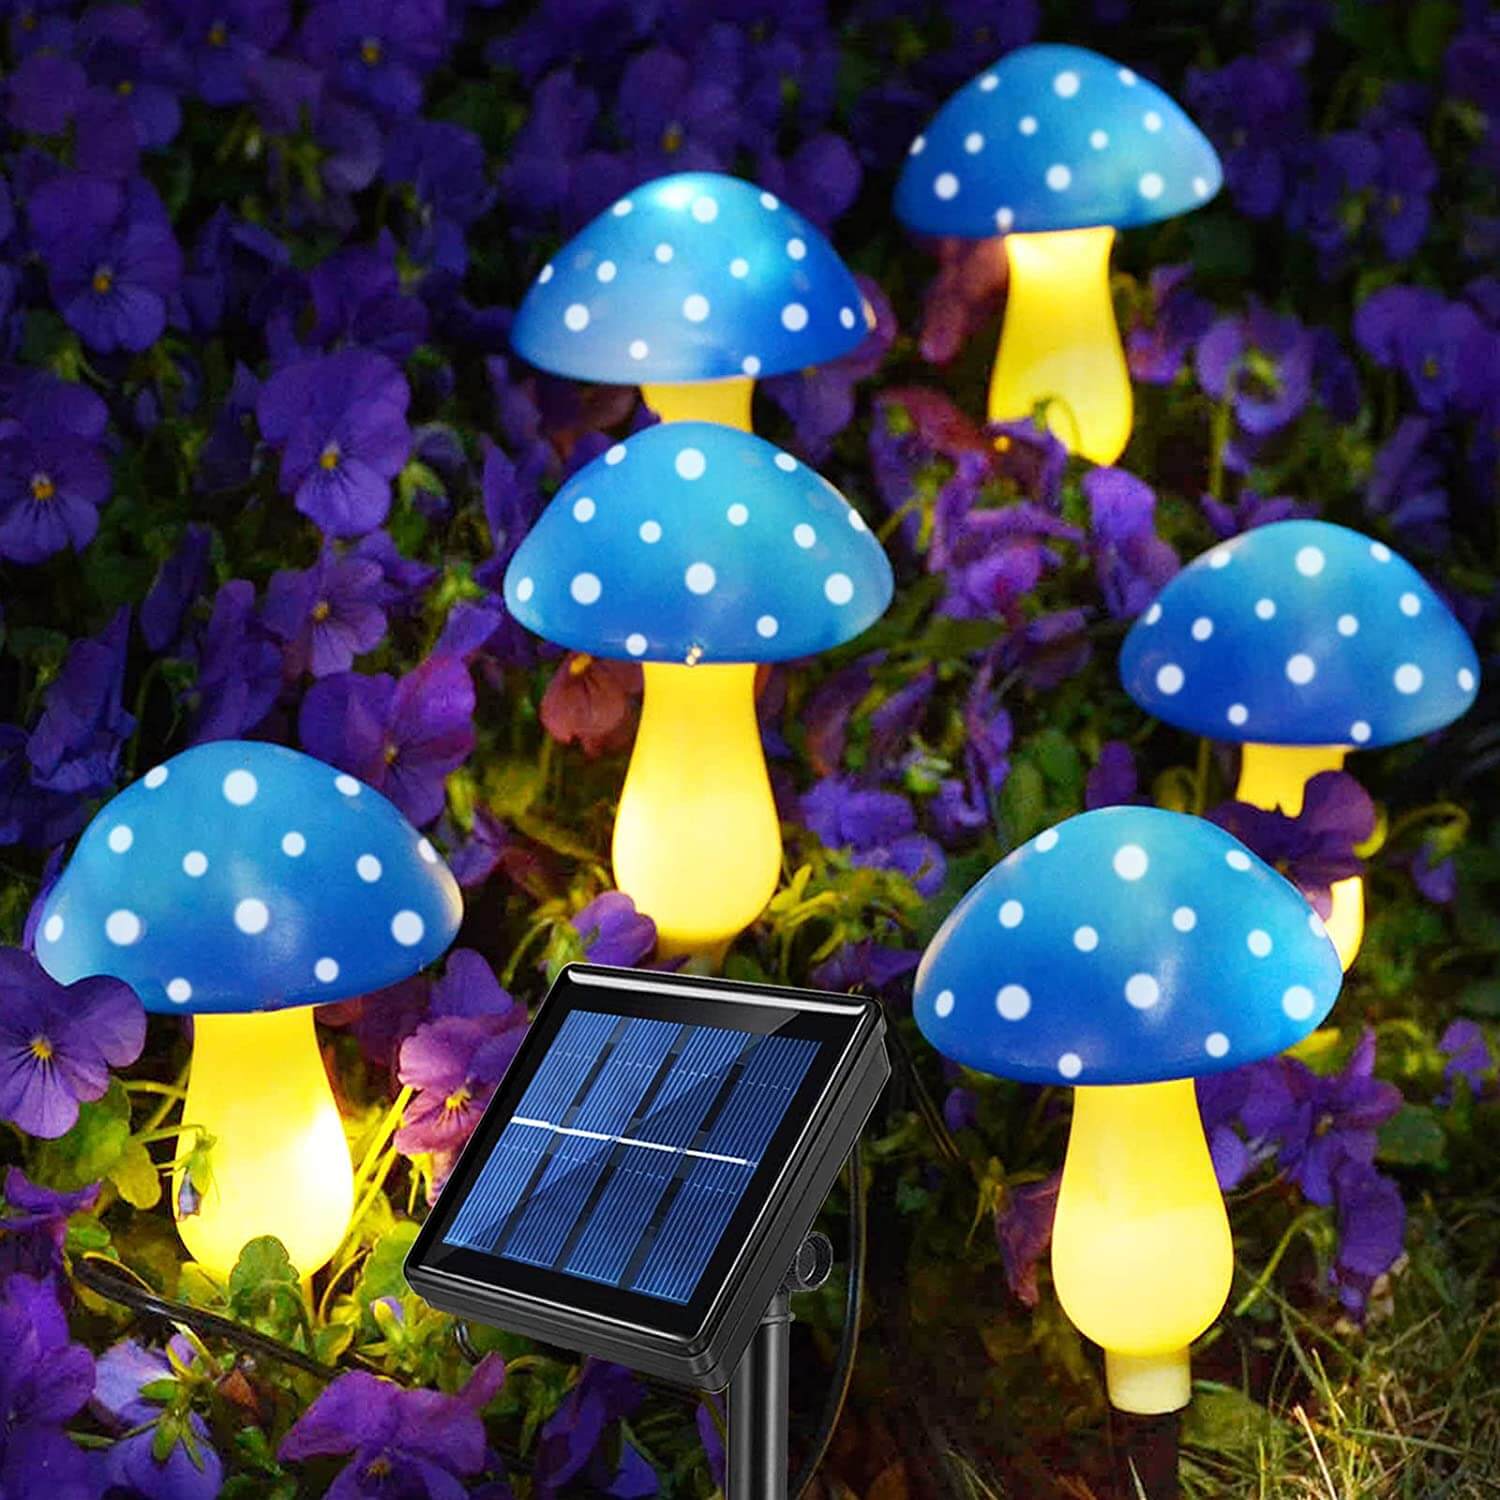 Abkshine Blue Solar Mushroom Stake Lights